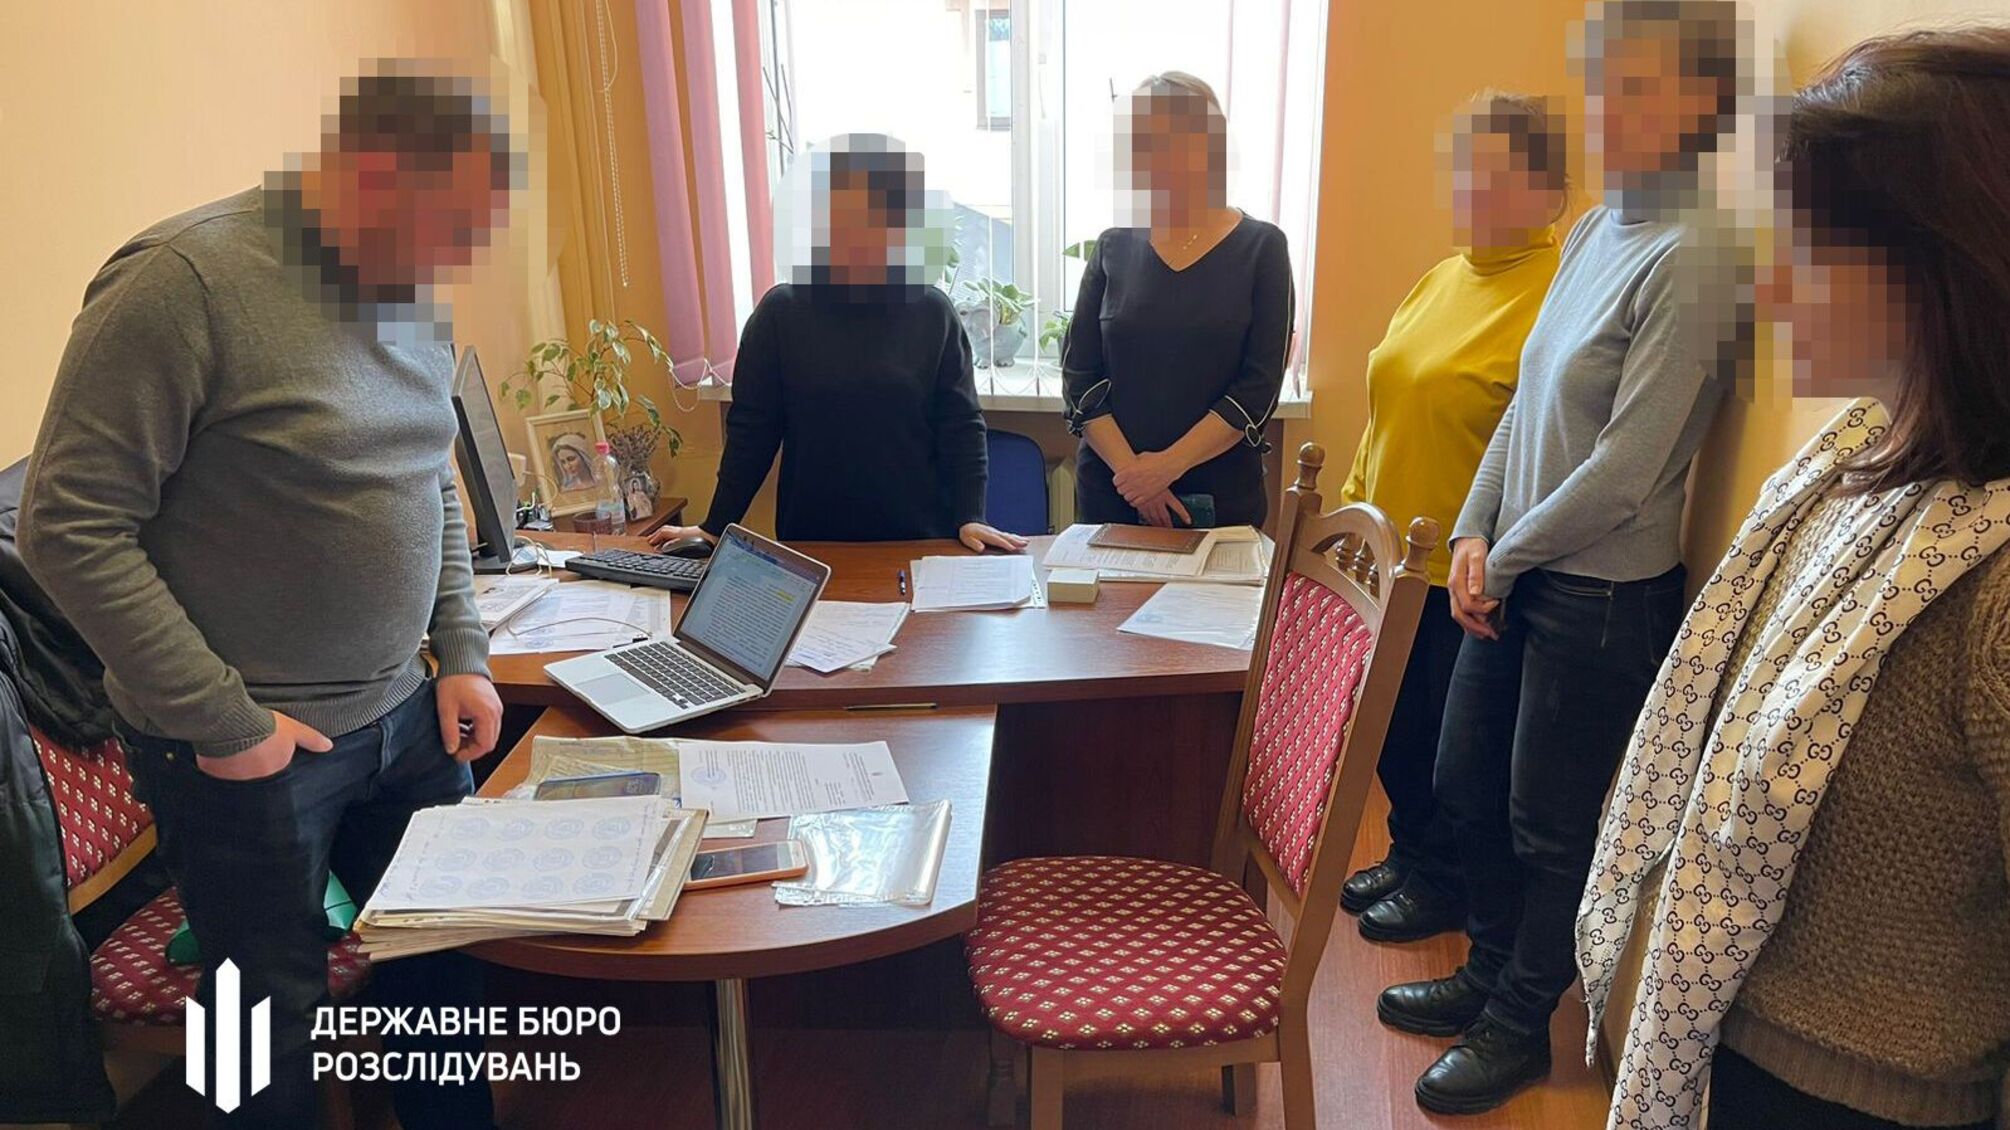 Переправлял призывников за границу: правоохранителя из Прикарпатья будут судить (фото)